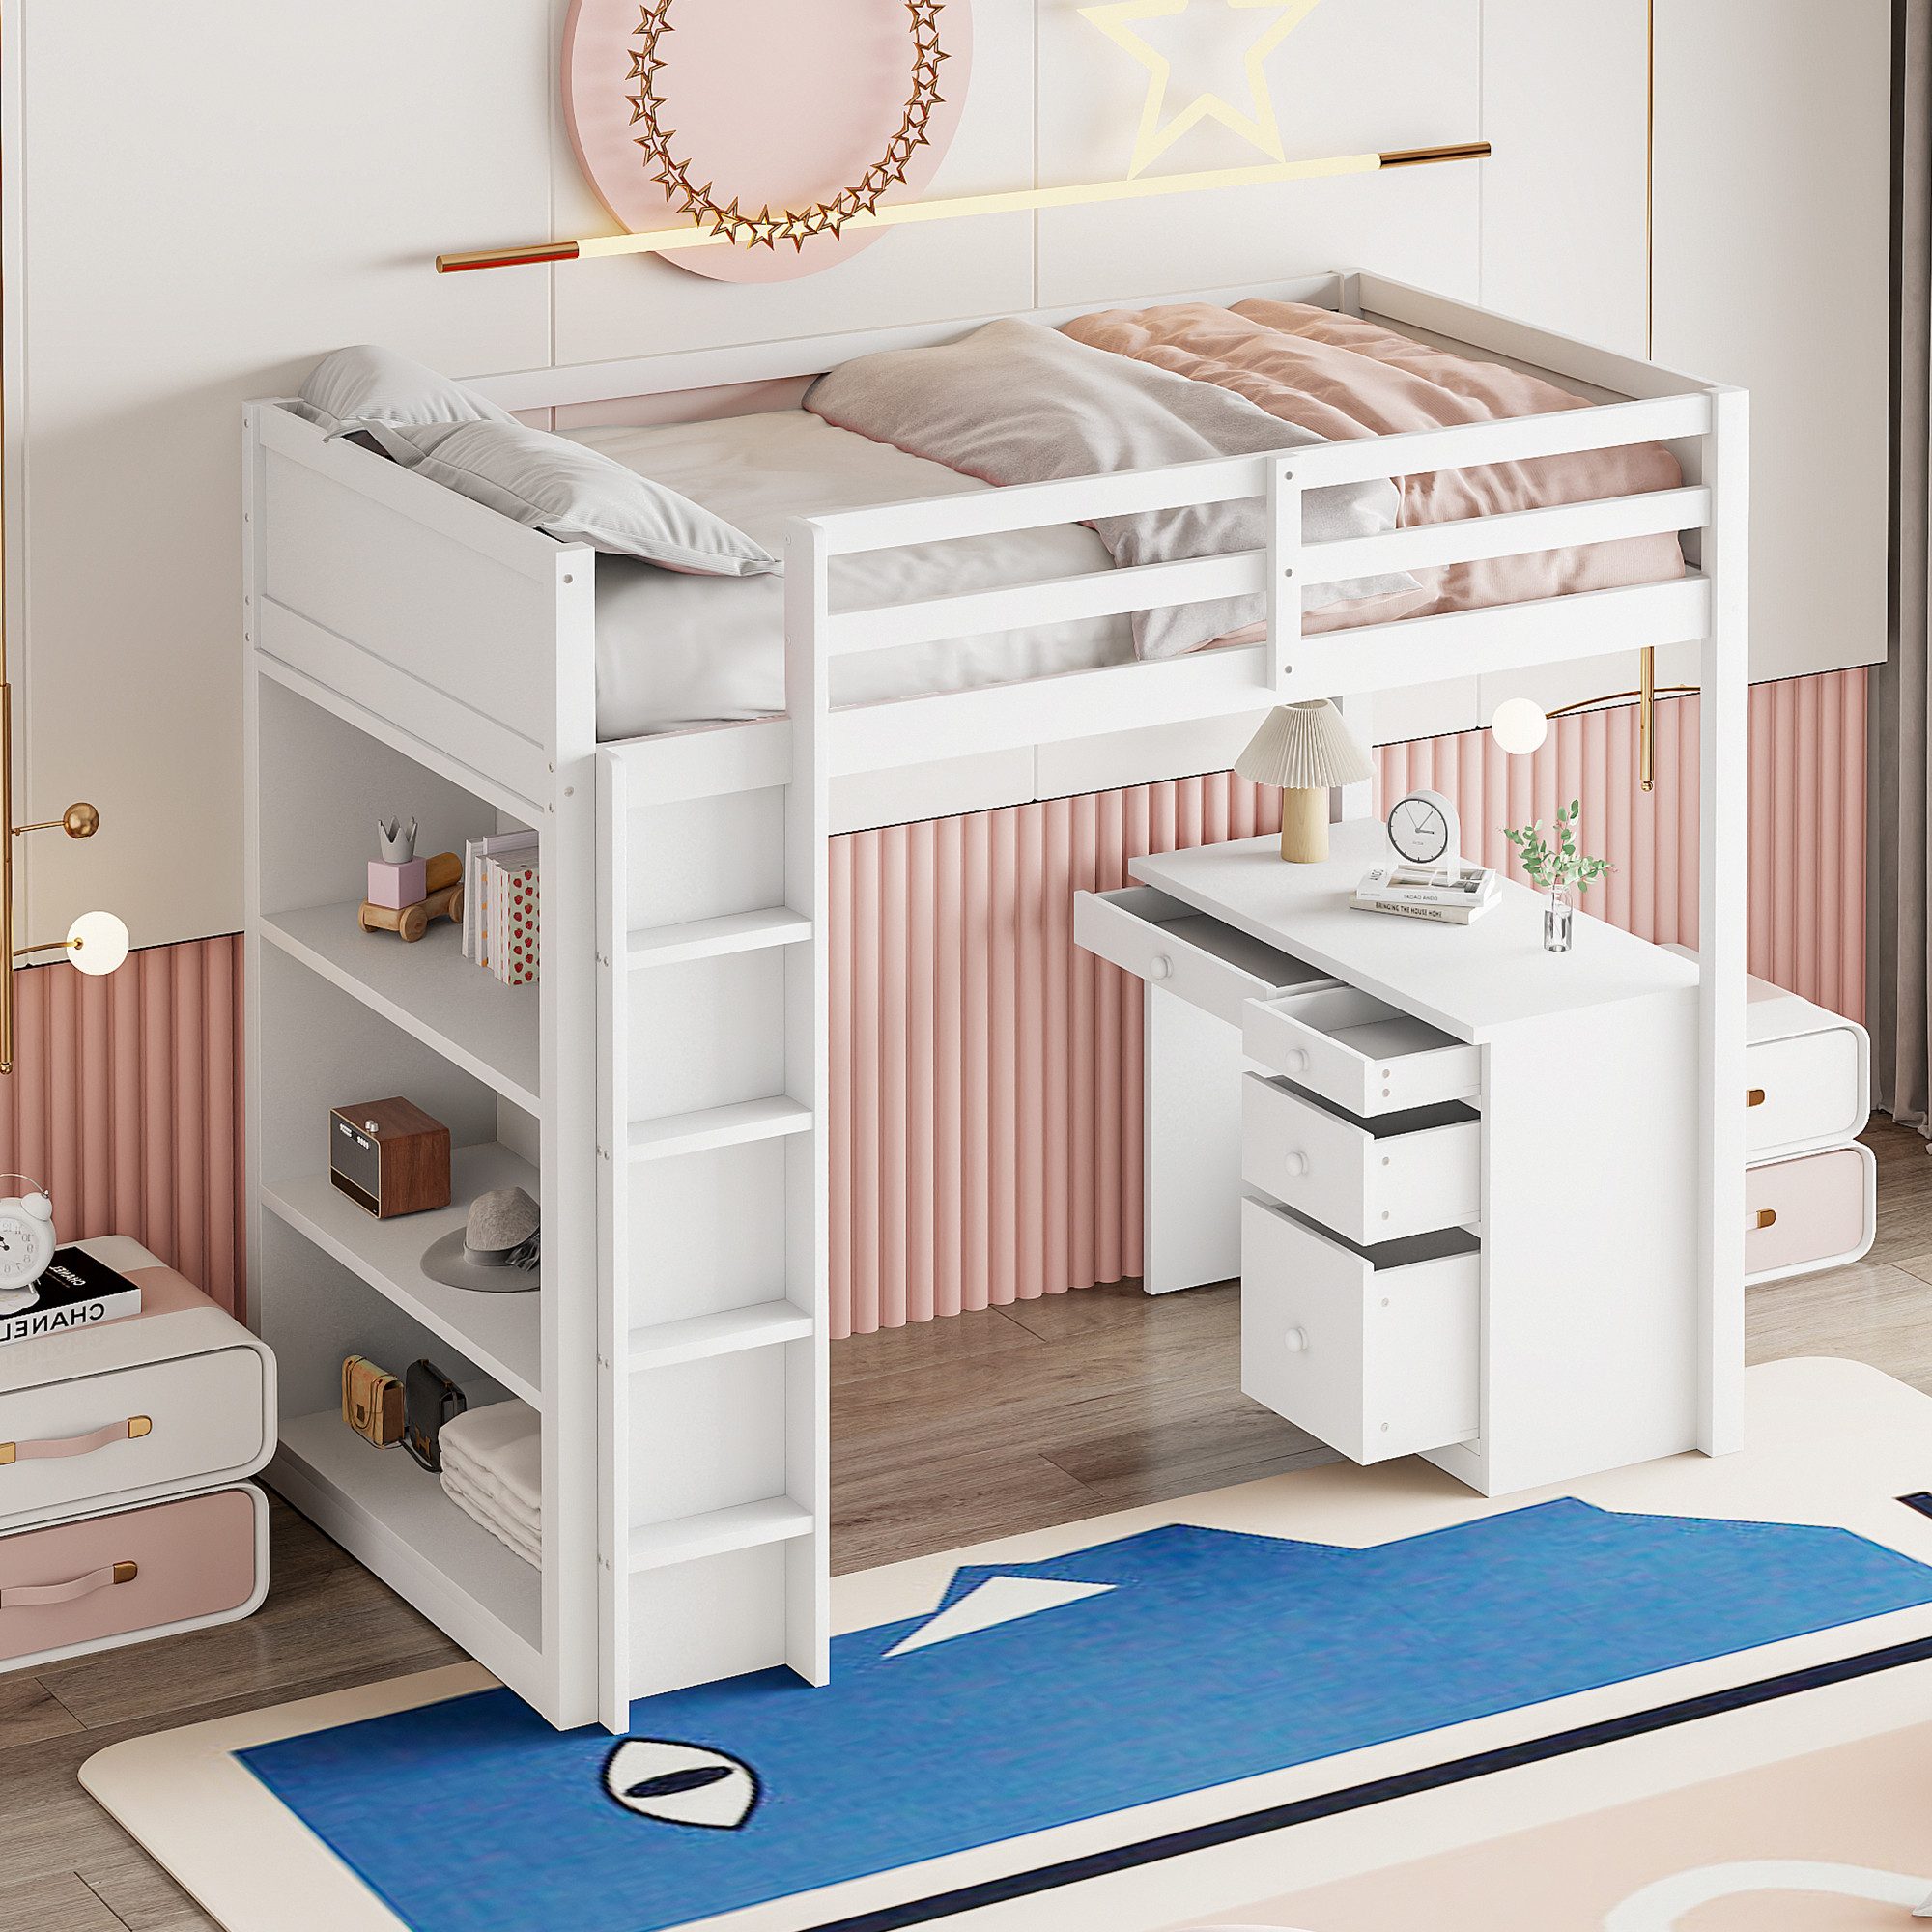 SOFTWEARY Hochbett mit Lattenrost (90x200 cm) Kinderbett mit Rausfallschutz, Schreibtisch und Regal